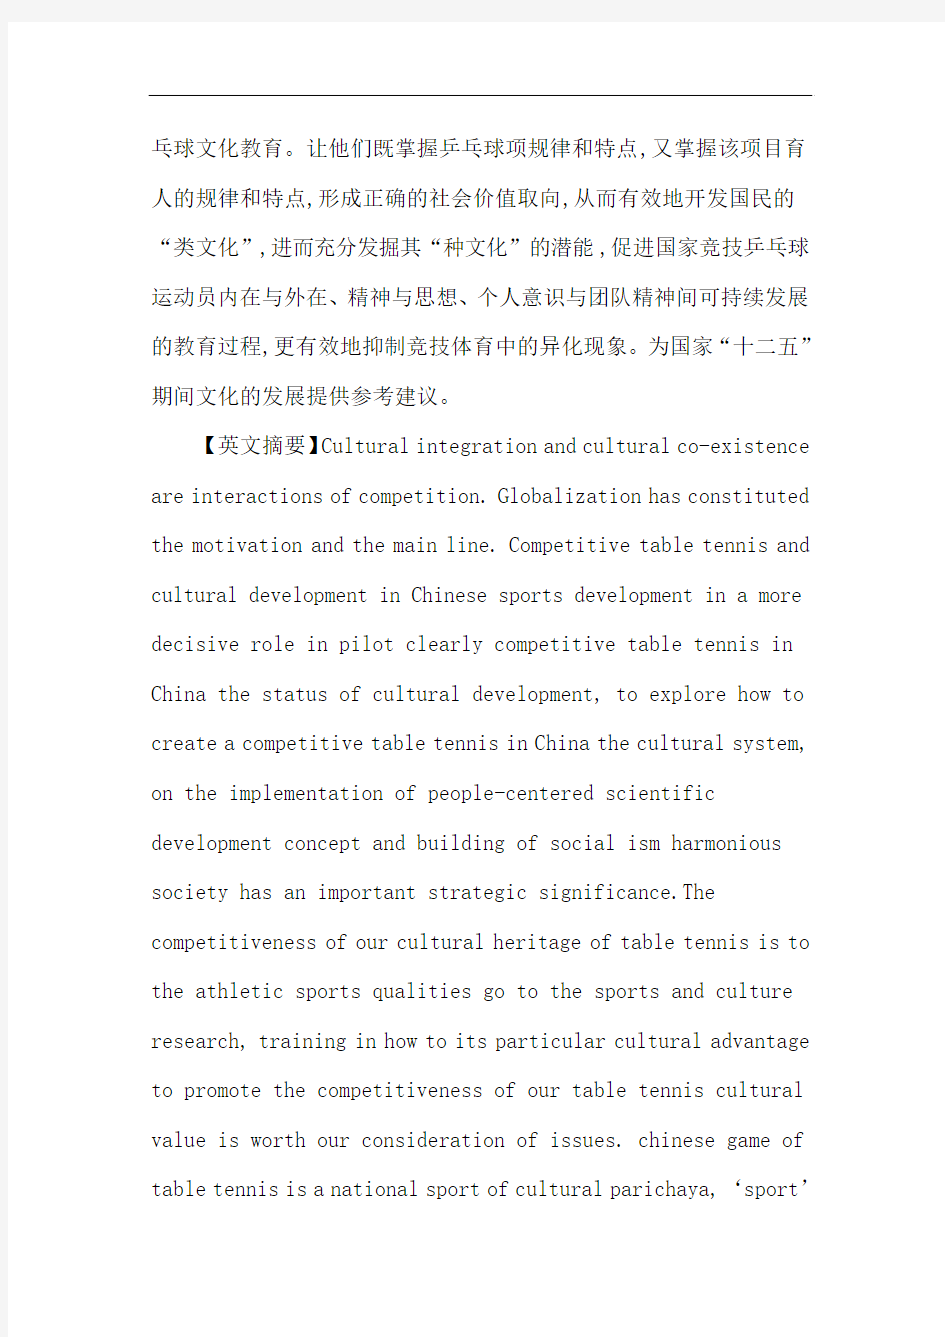 竞技乒乓球论文：对中国竞技乒乓球文化传承的研究